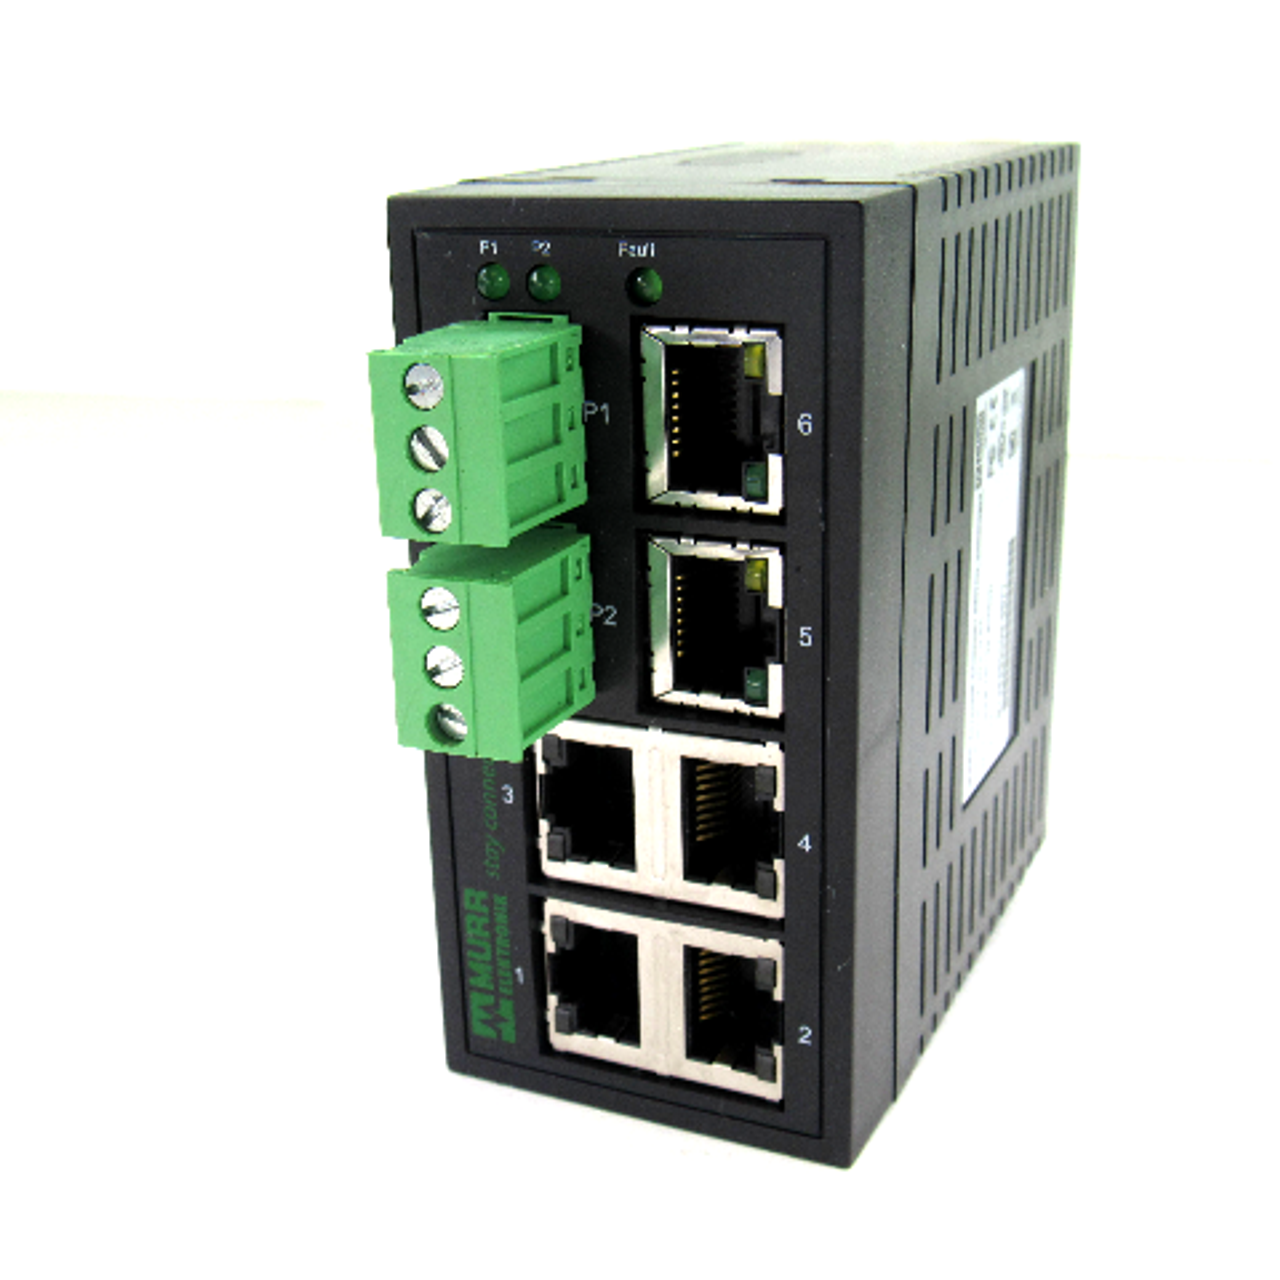 Murr Elektronik MES 10/100 58170 Ethernet Switch, 9-30V DC, 0.6 Amp